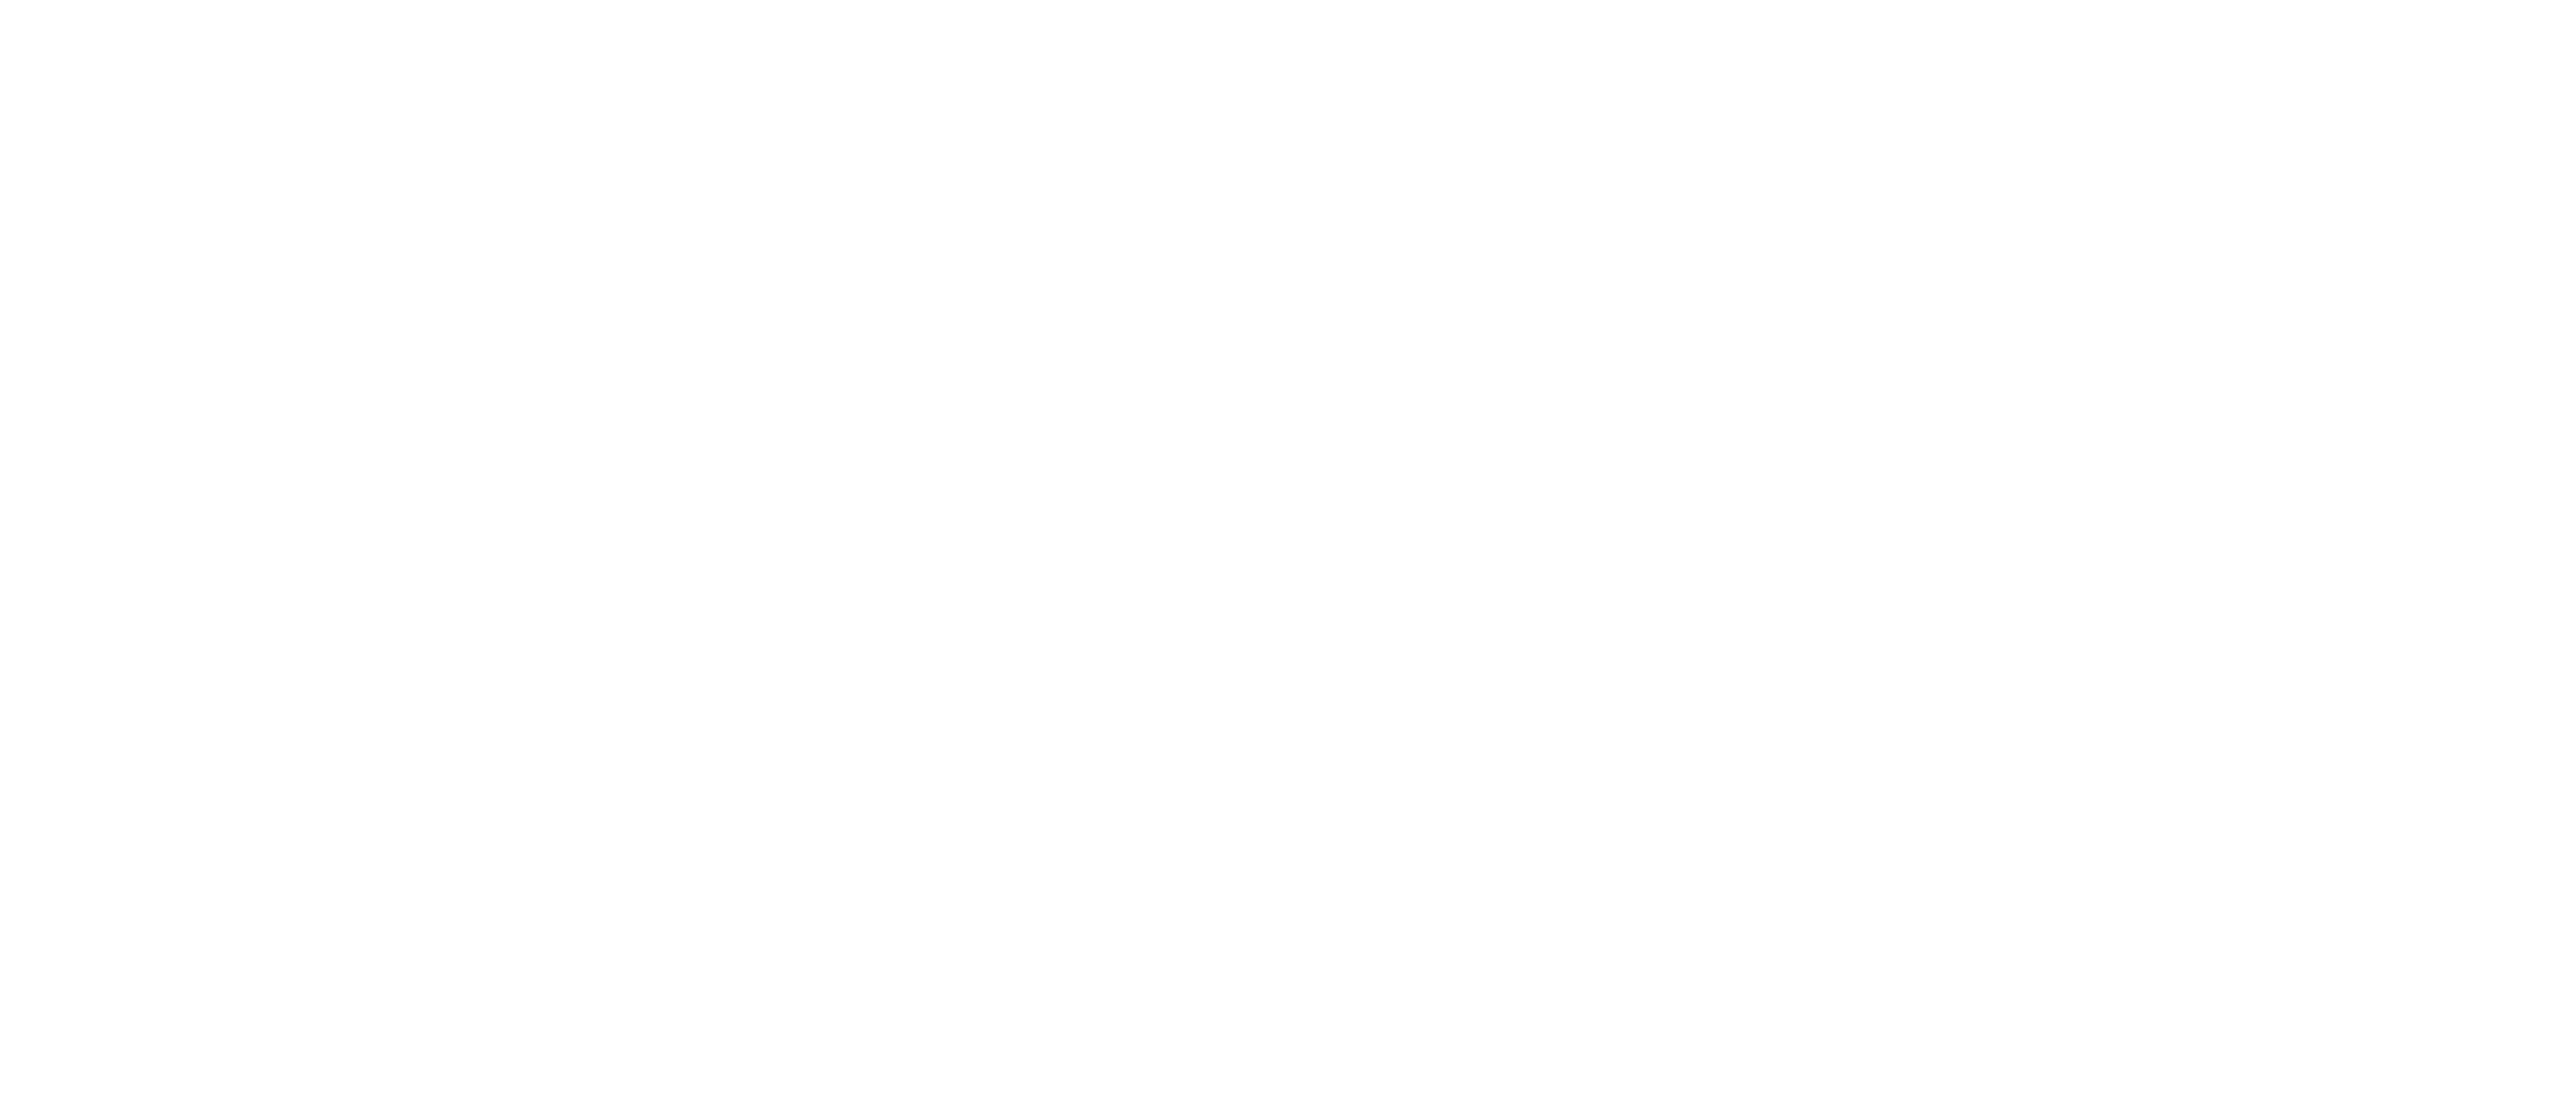 Los Suenos Rental Properties Logo